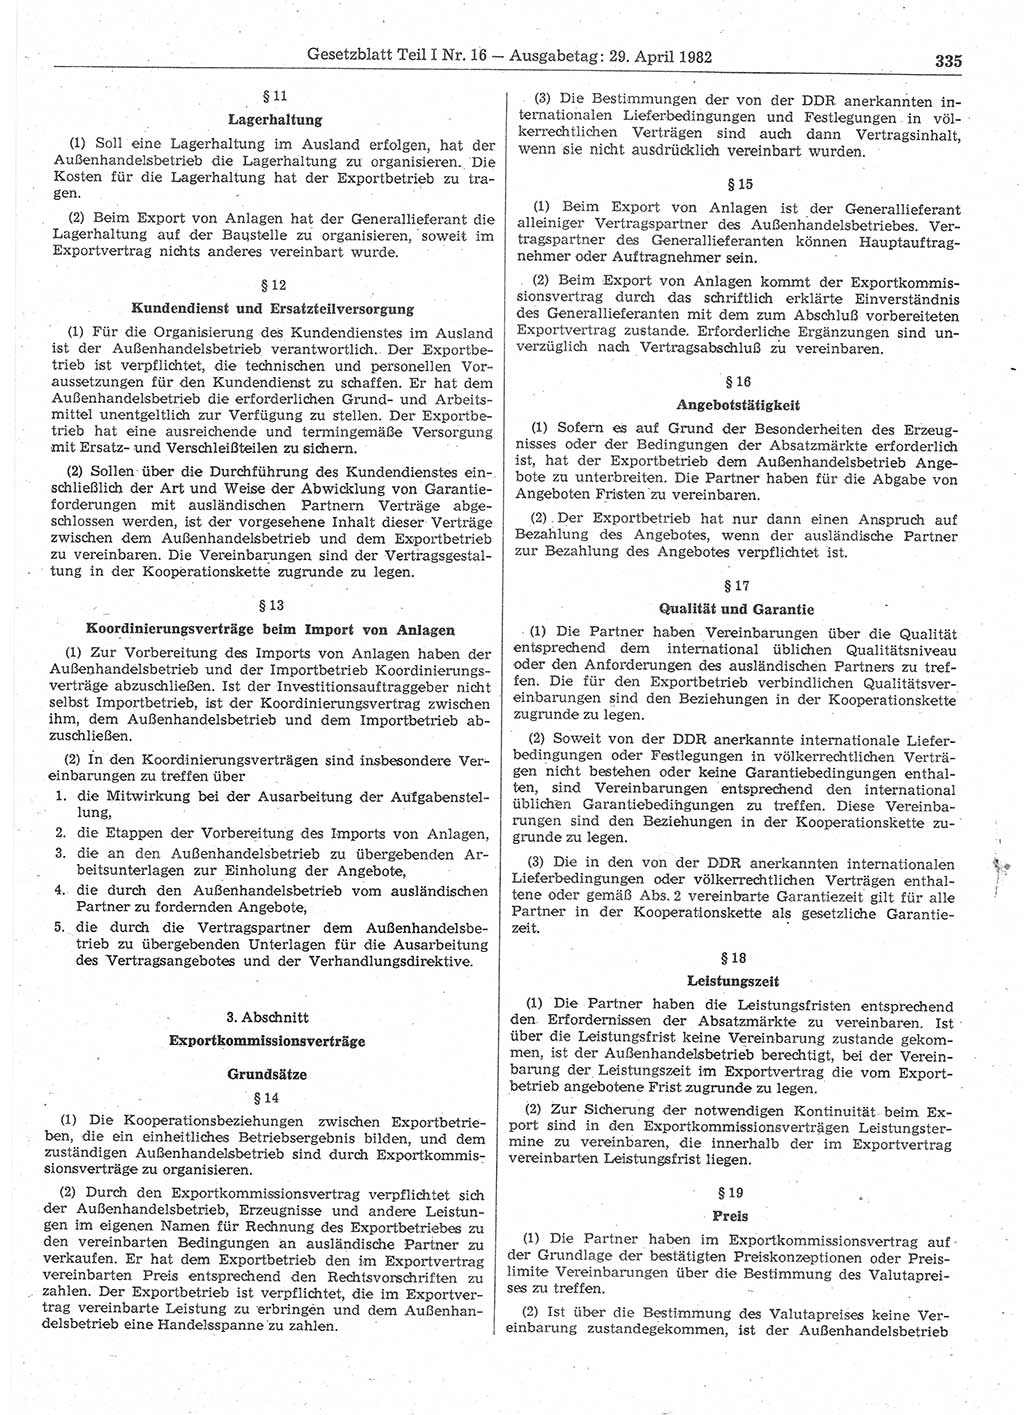 Gesetzblatt (GBl.) der Deutschen Demokratischen Republik (DDR) Teil Ⅰ 1982, Seite 335 (GBl. DDR Ⅰ 1982, S. 335)